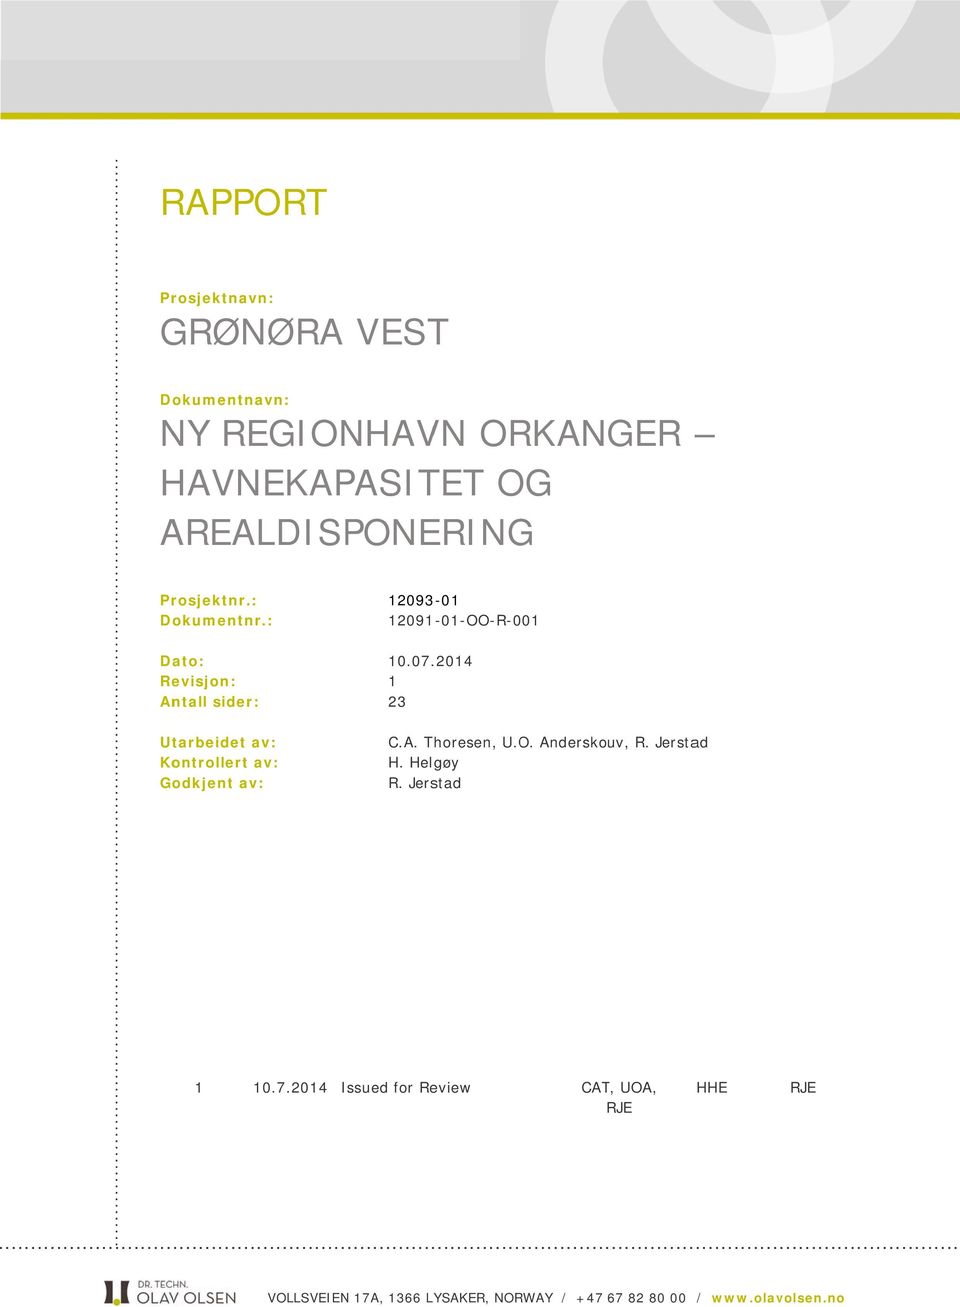 .2014 1 23 C.A. Thoresen, U.O. Anderskouv, R. Jerstad H. Helgøy R. Jerstad Revisjon Dato Grunn for utsendelse Utarb. av Kontr.